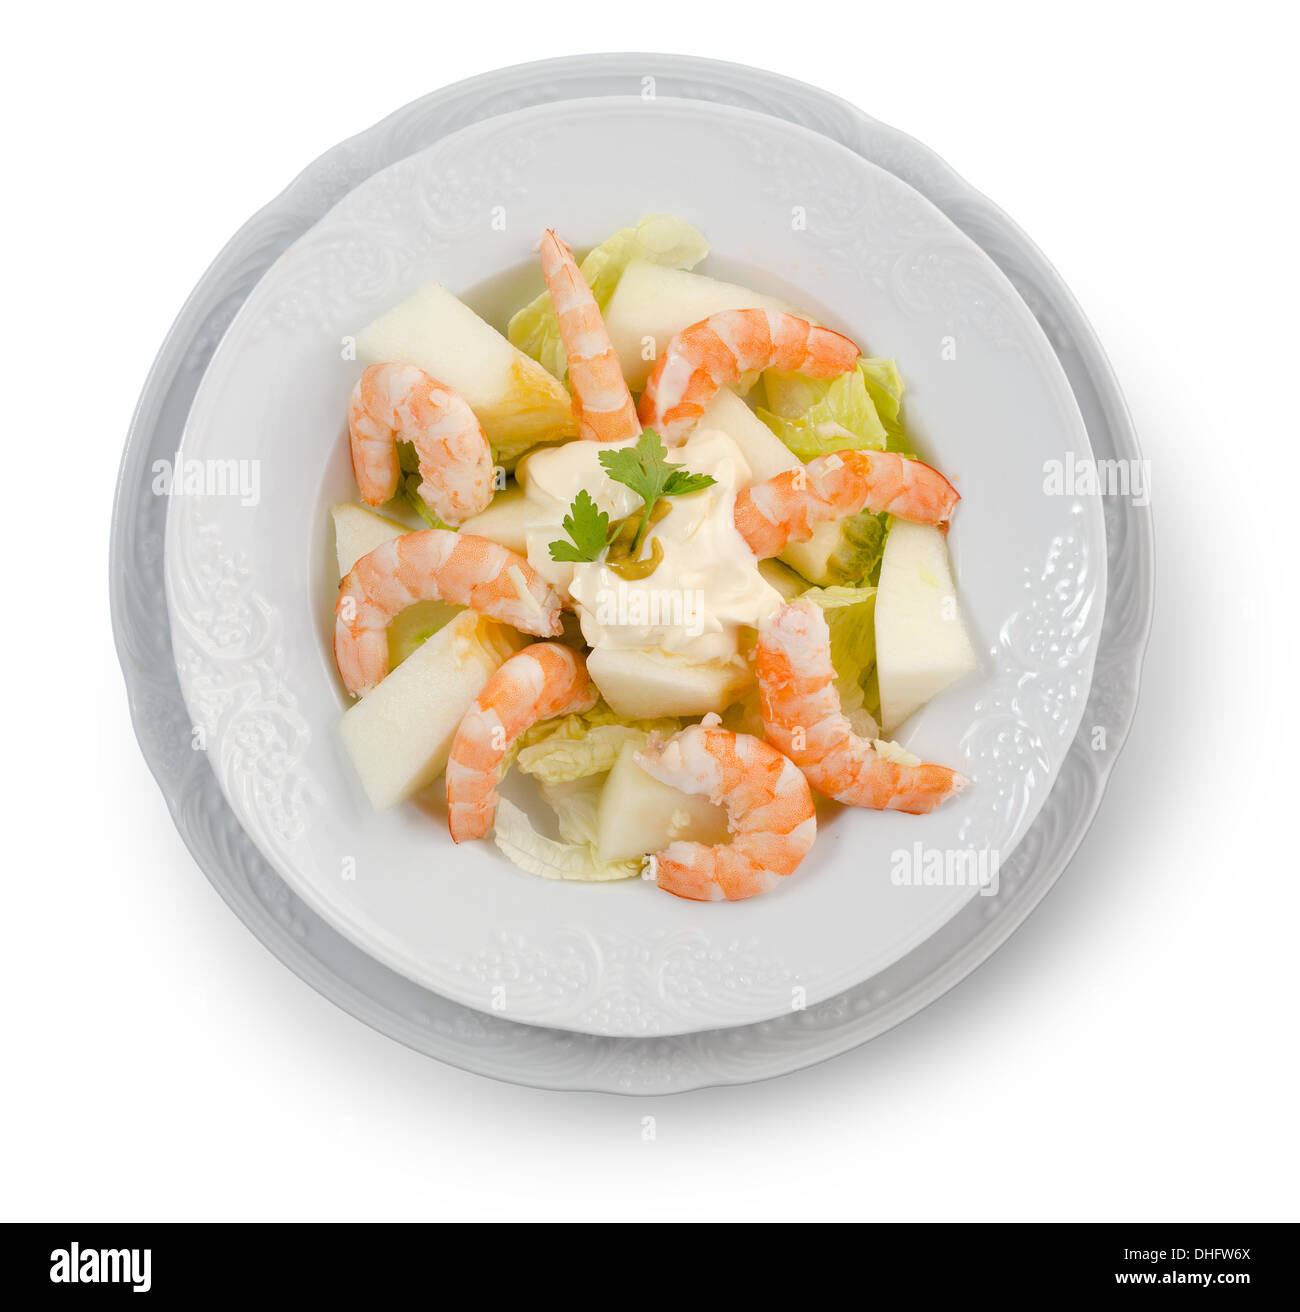 Insalata di gamberetti, melone, lattuga e maionese. Su sfondo bianco Foto Stock